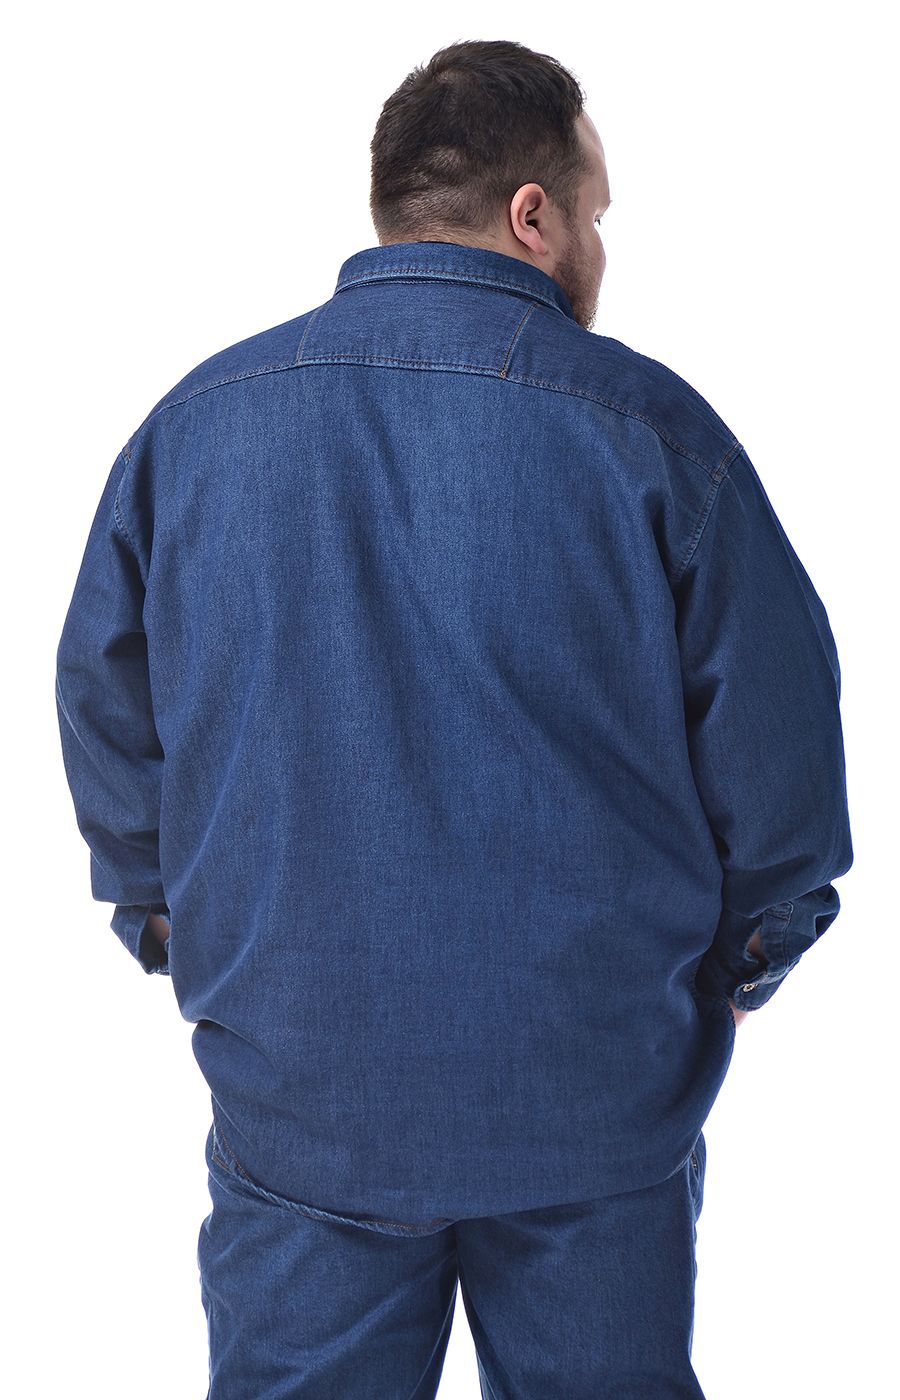 Рубашка джинсовая с двумя накладными карманами. большого размера